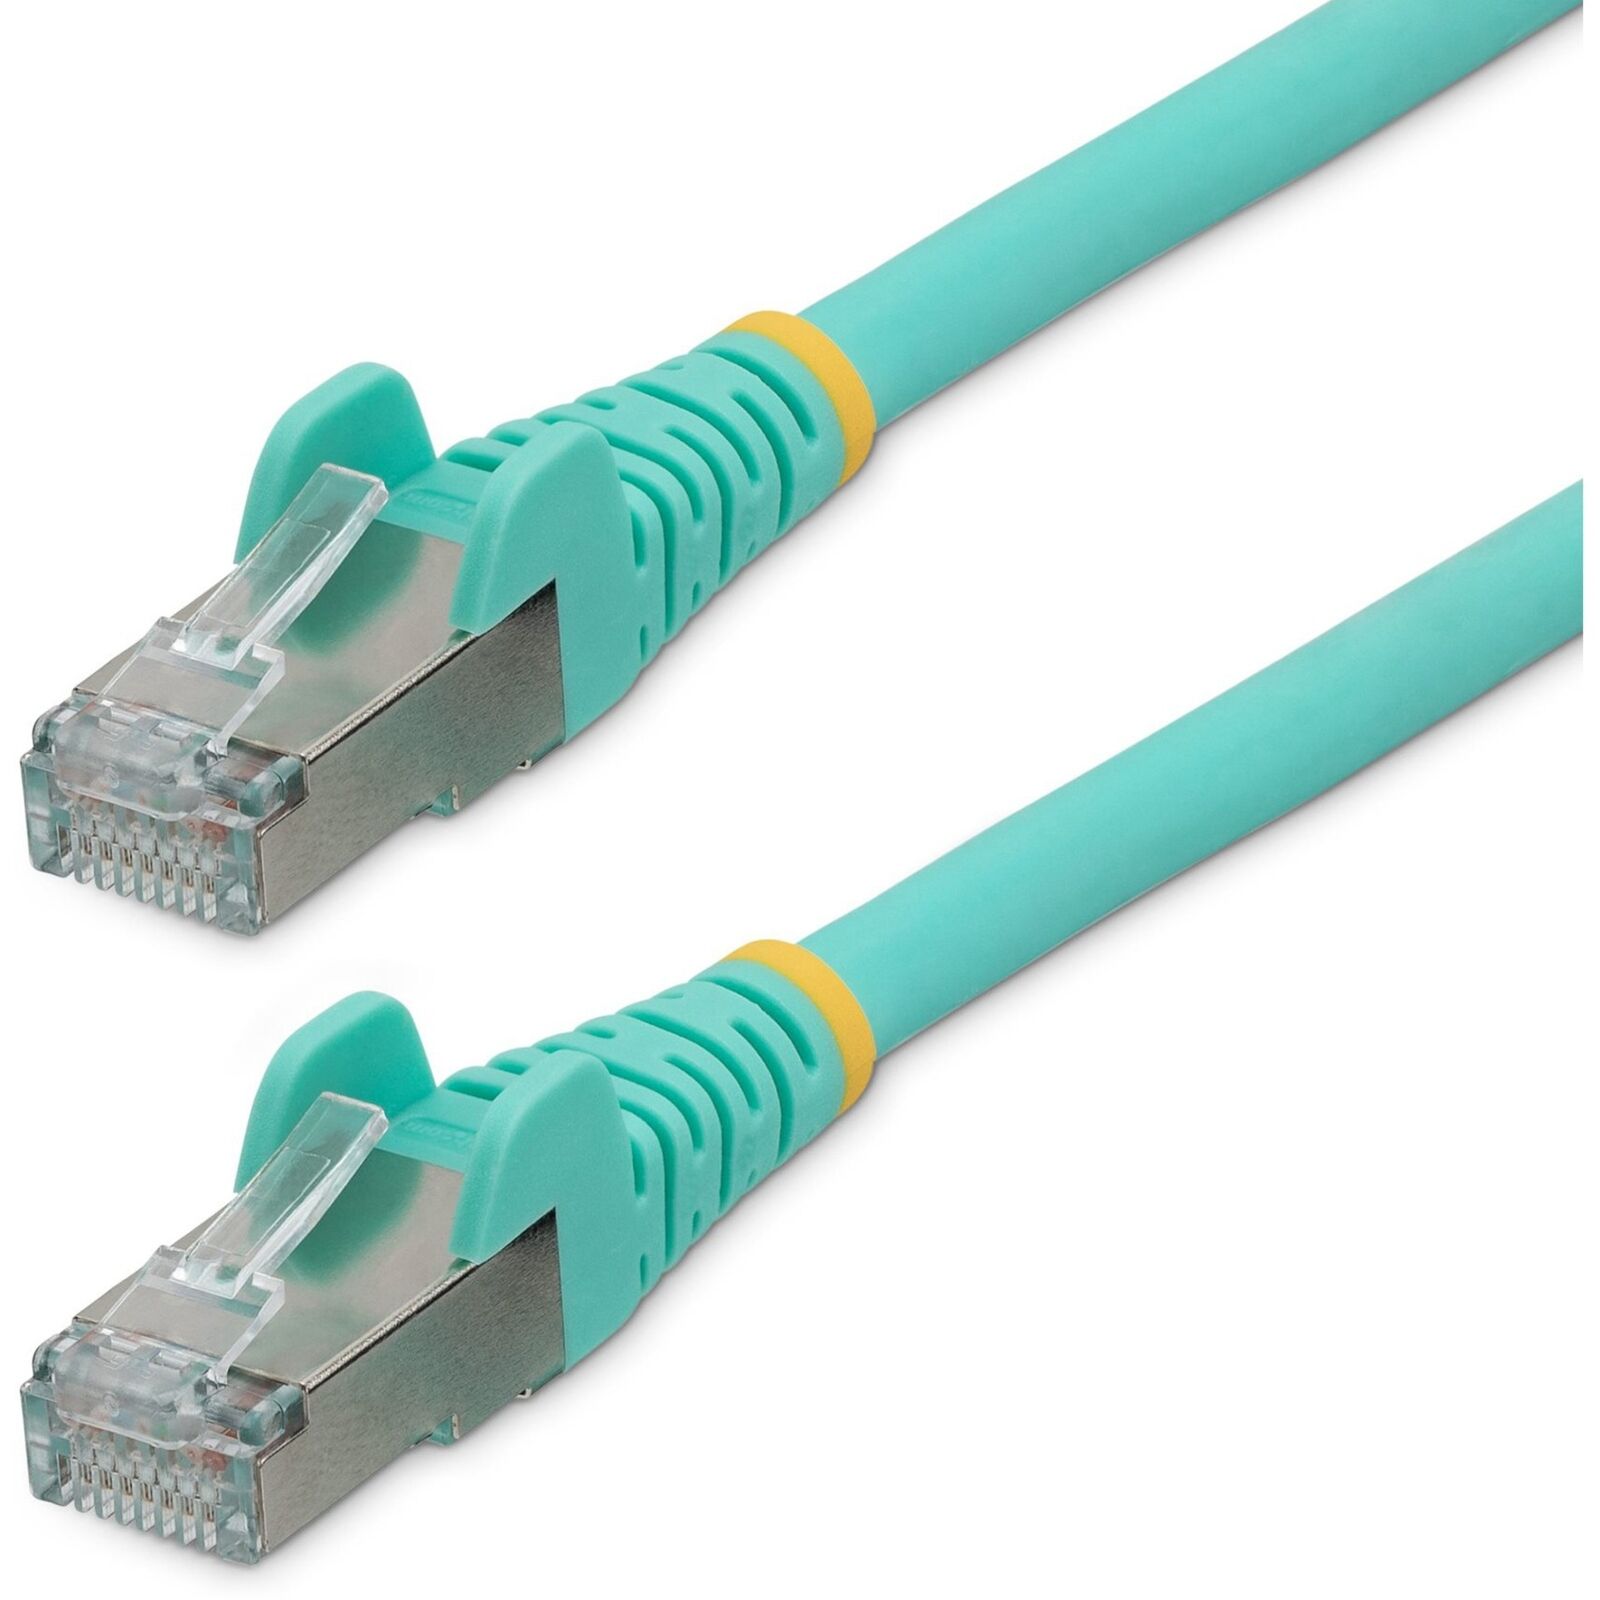 StarTech.com 25ft CAT6a Ethernet Cable, Aqua Low Smoke Zero Halogen [LSZH] 10